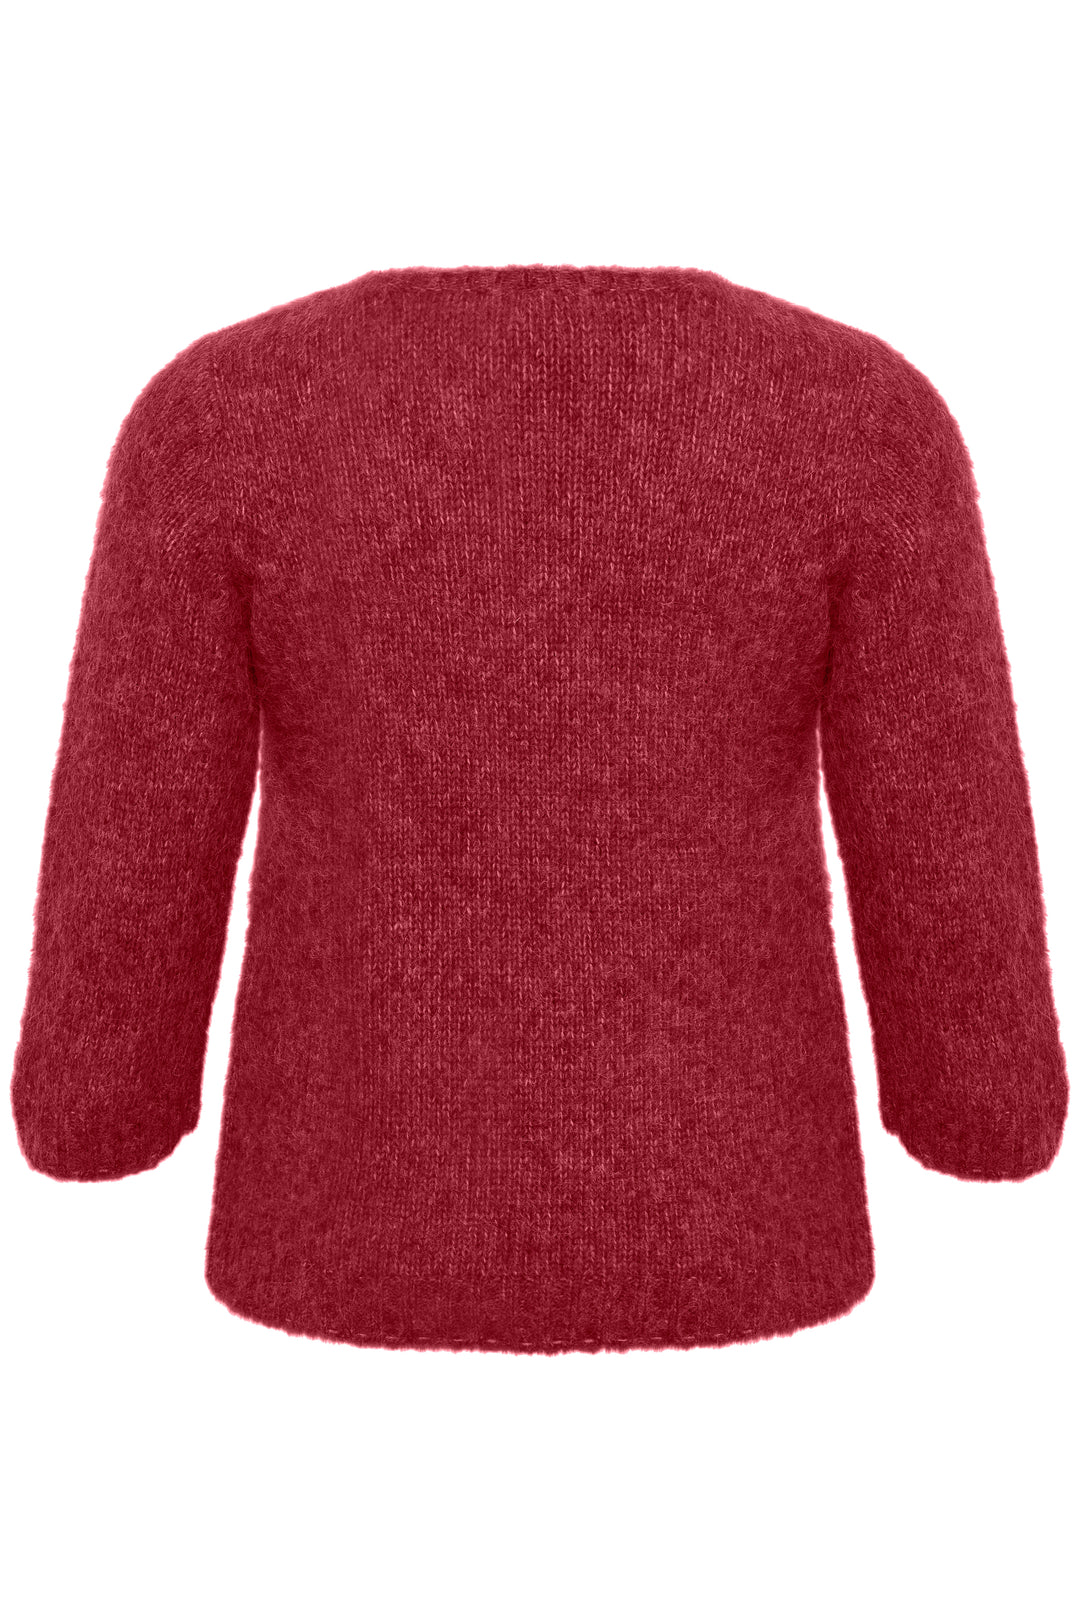 rood roze trui - kaffe curve - - grote maten - dameskleding - kledingwinkel - herent - leuven